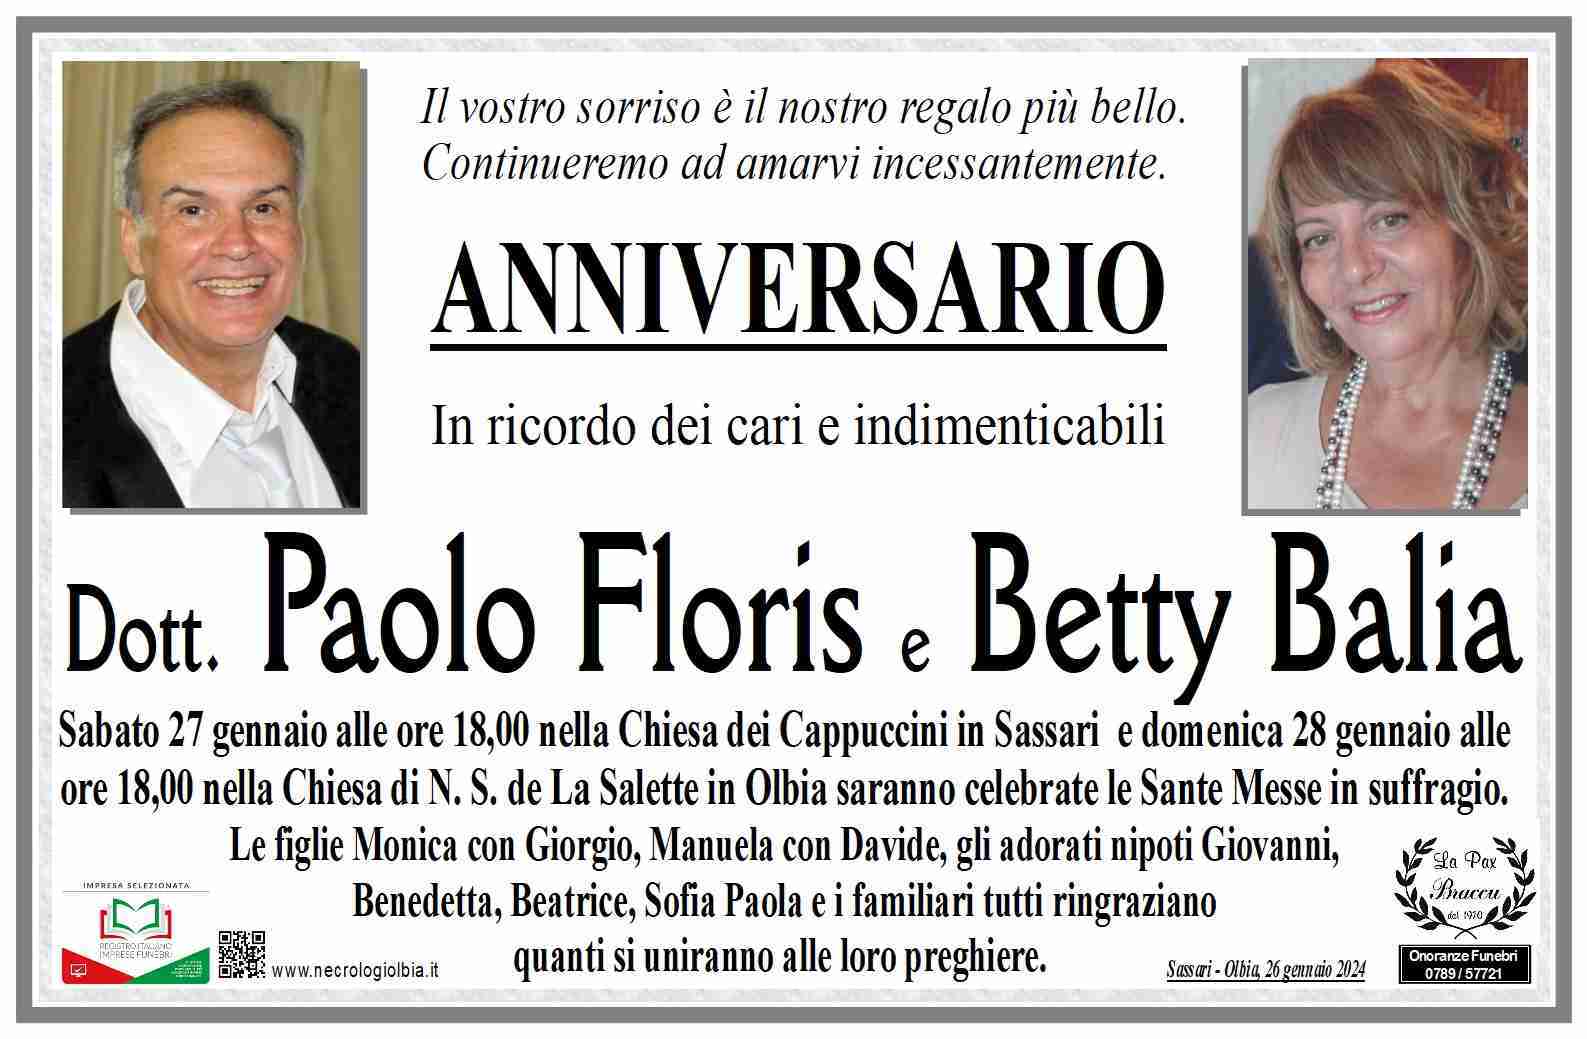 Dott Paolo Floris e Betty Balia